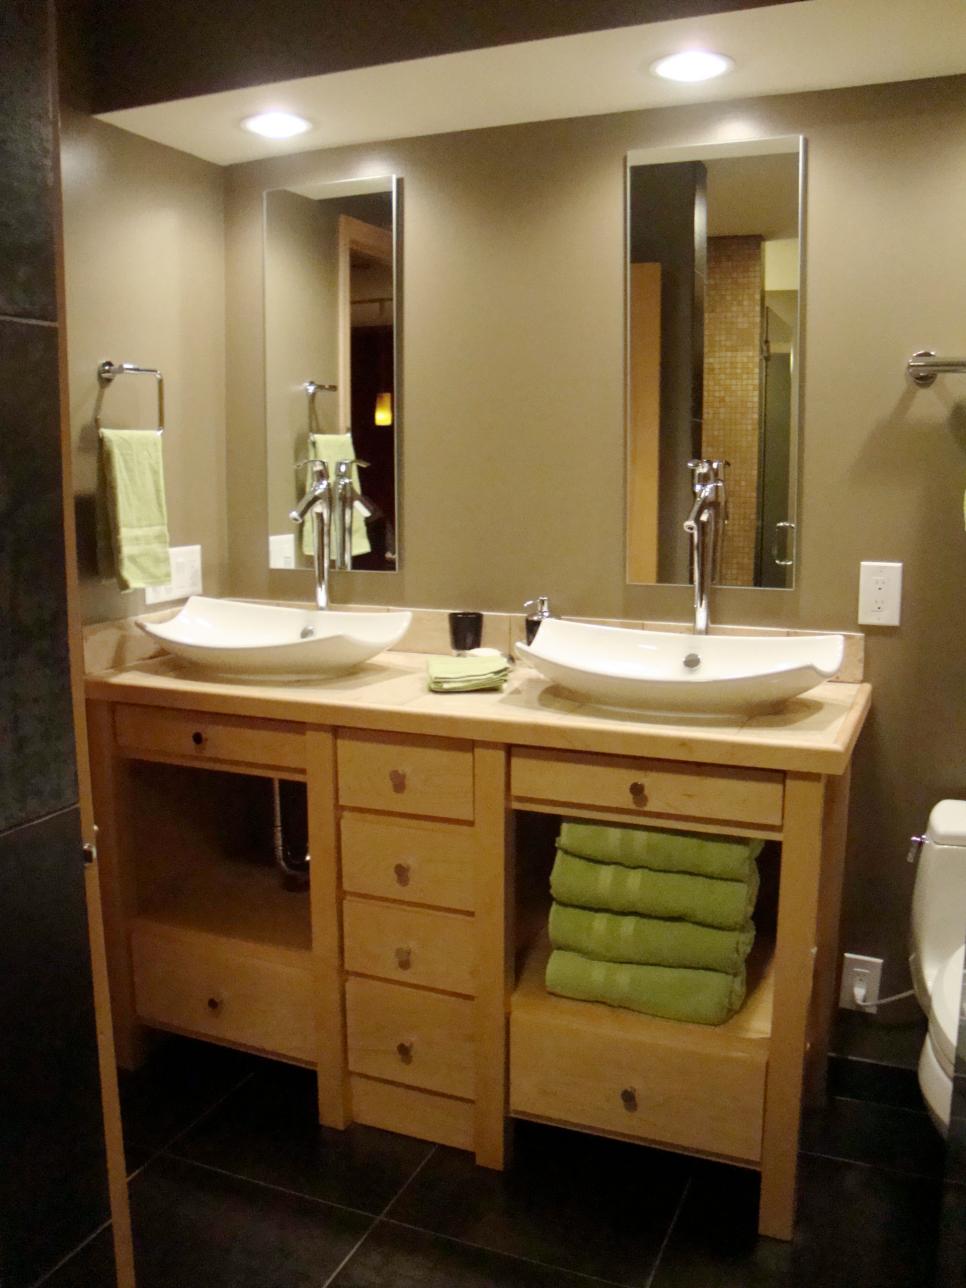 Beautiful Images of Bathroom Sinks and Vanities | DIY